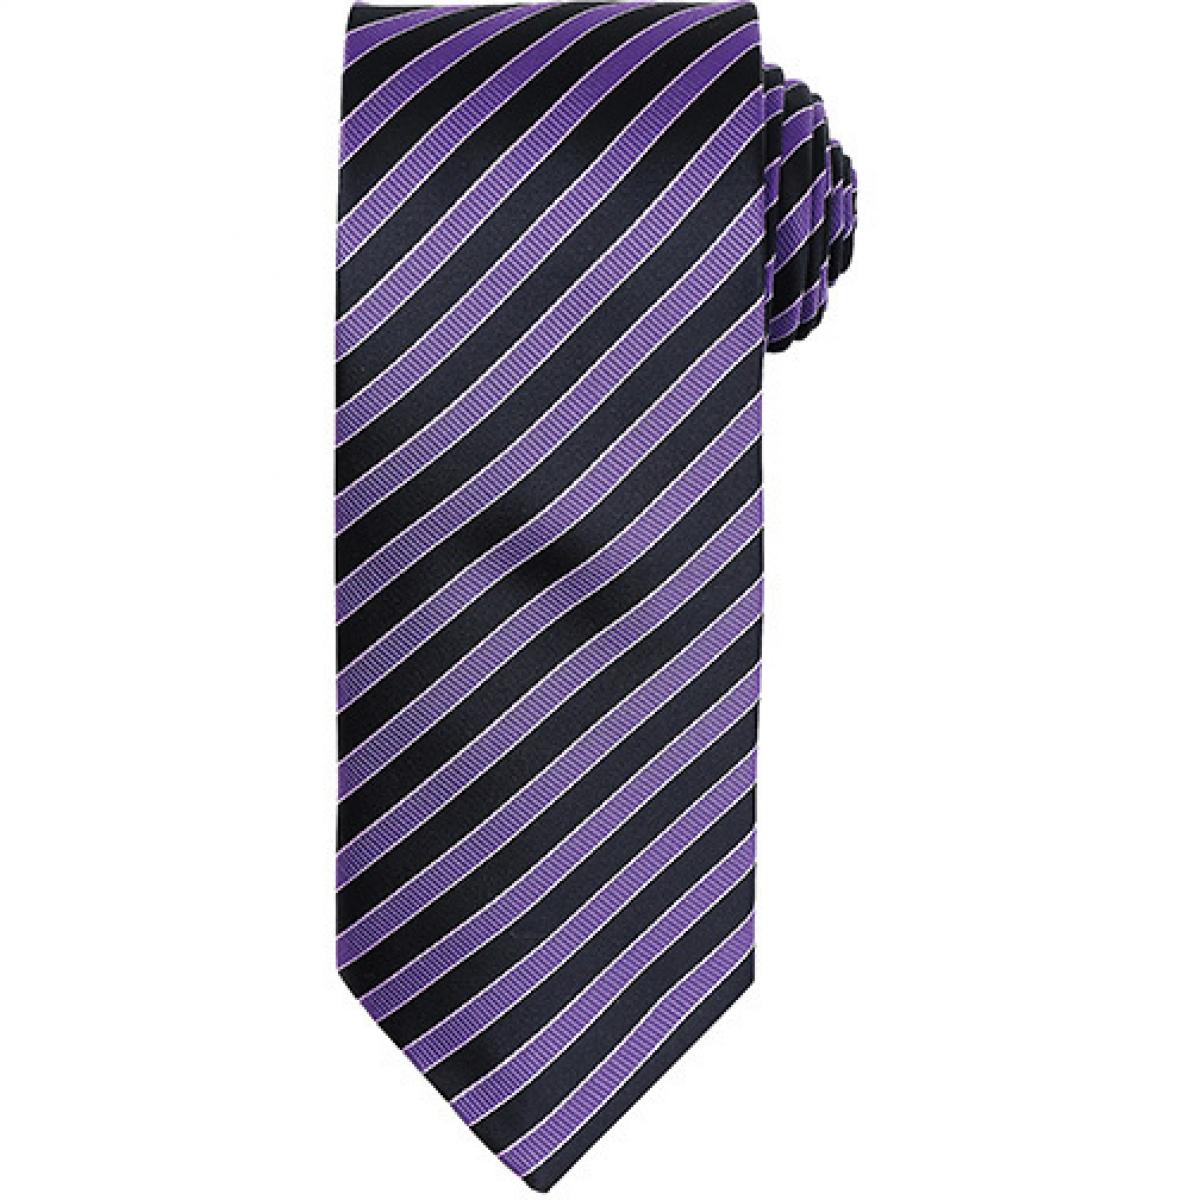 Hersteller: Premier Workwear Herstellernummer: PR782 Artikelbezeichnung: Double Stripe Tie / Breite 3" / 7,5 cm / Länge 57" / 144 cm Farbe: Rich Violet/Black